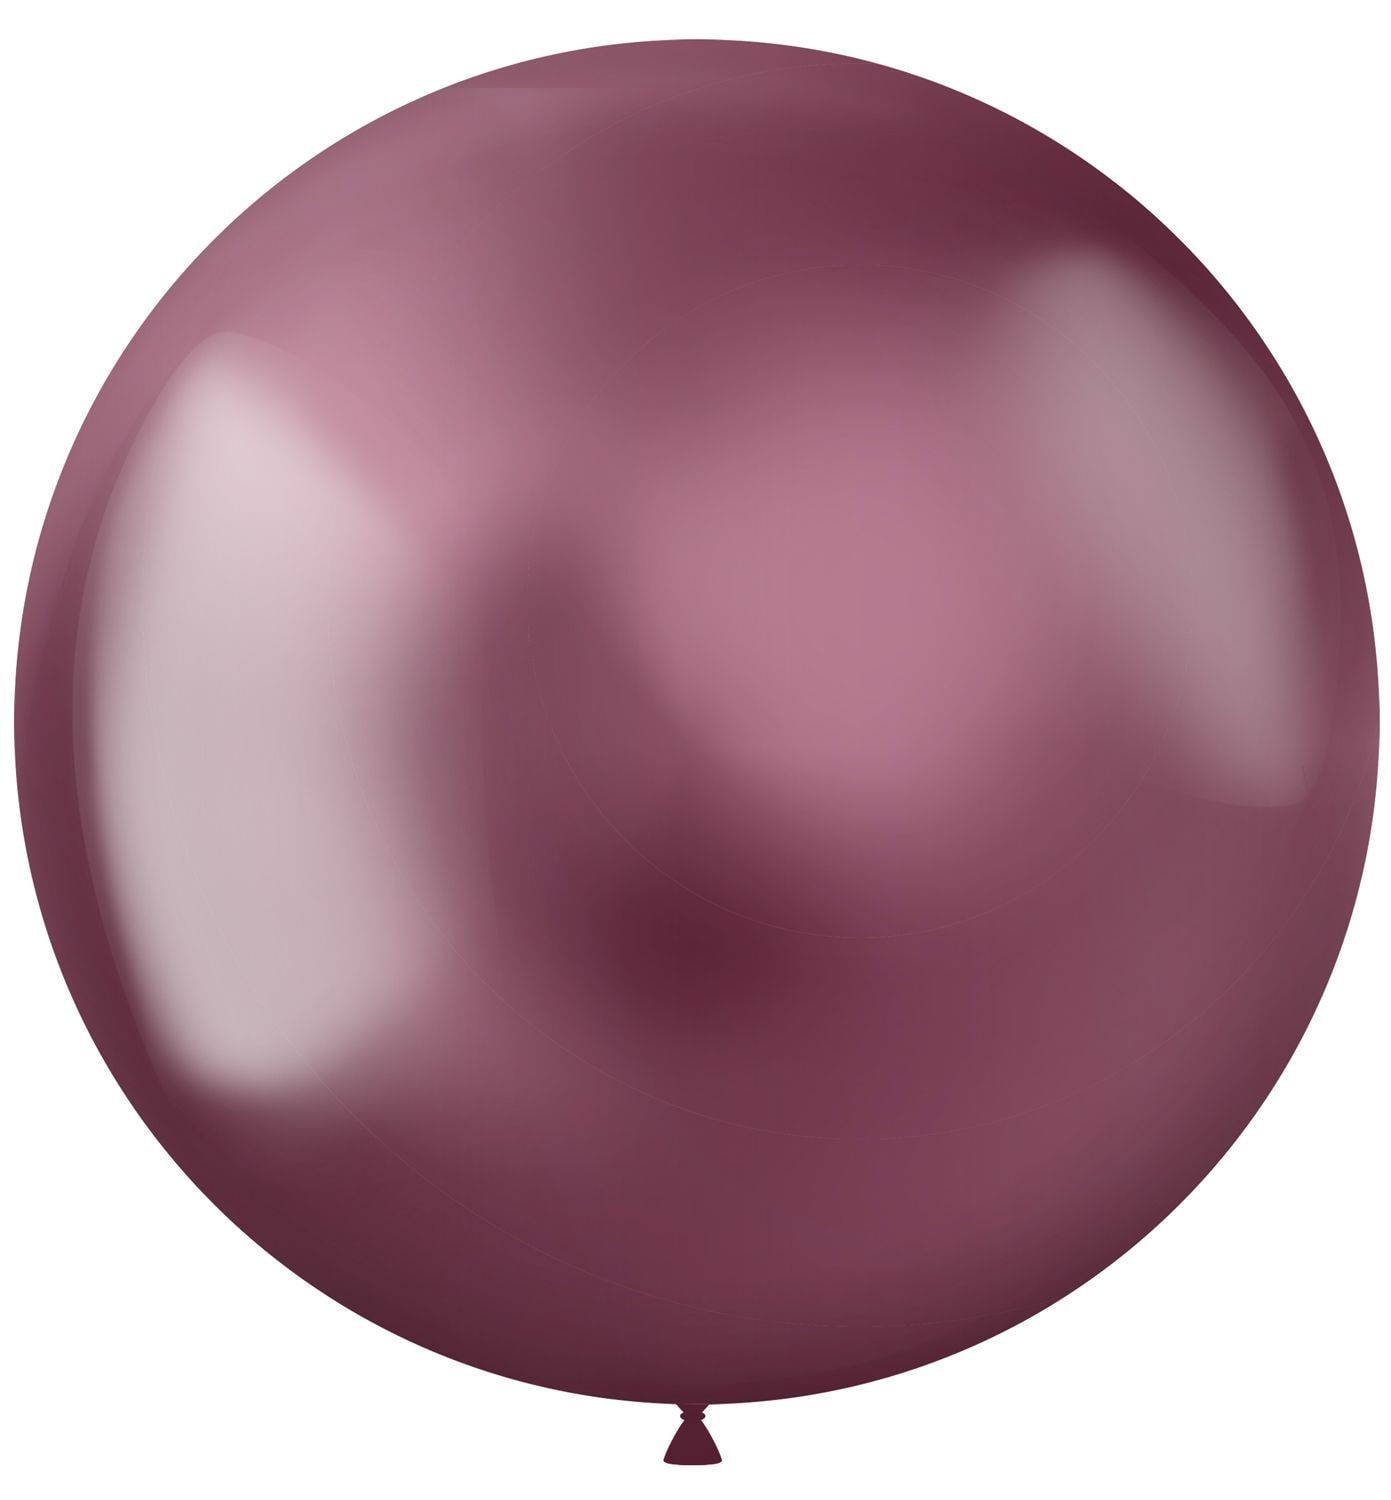 Intens roze ballonnen groot